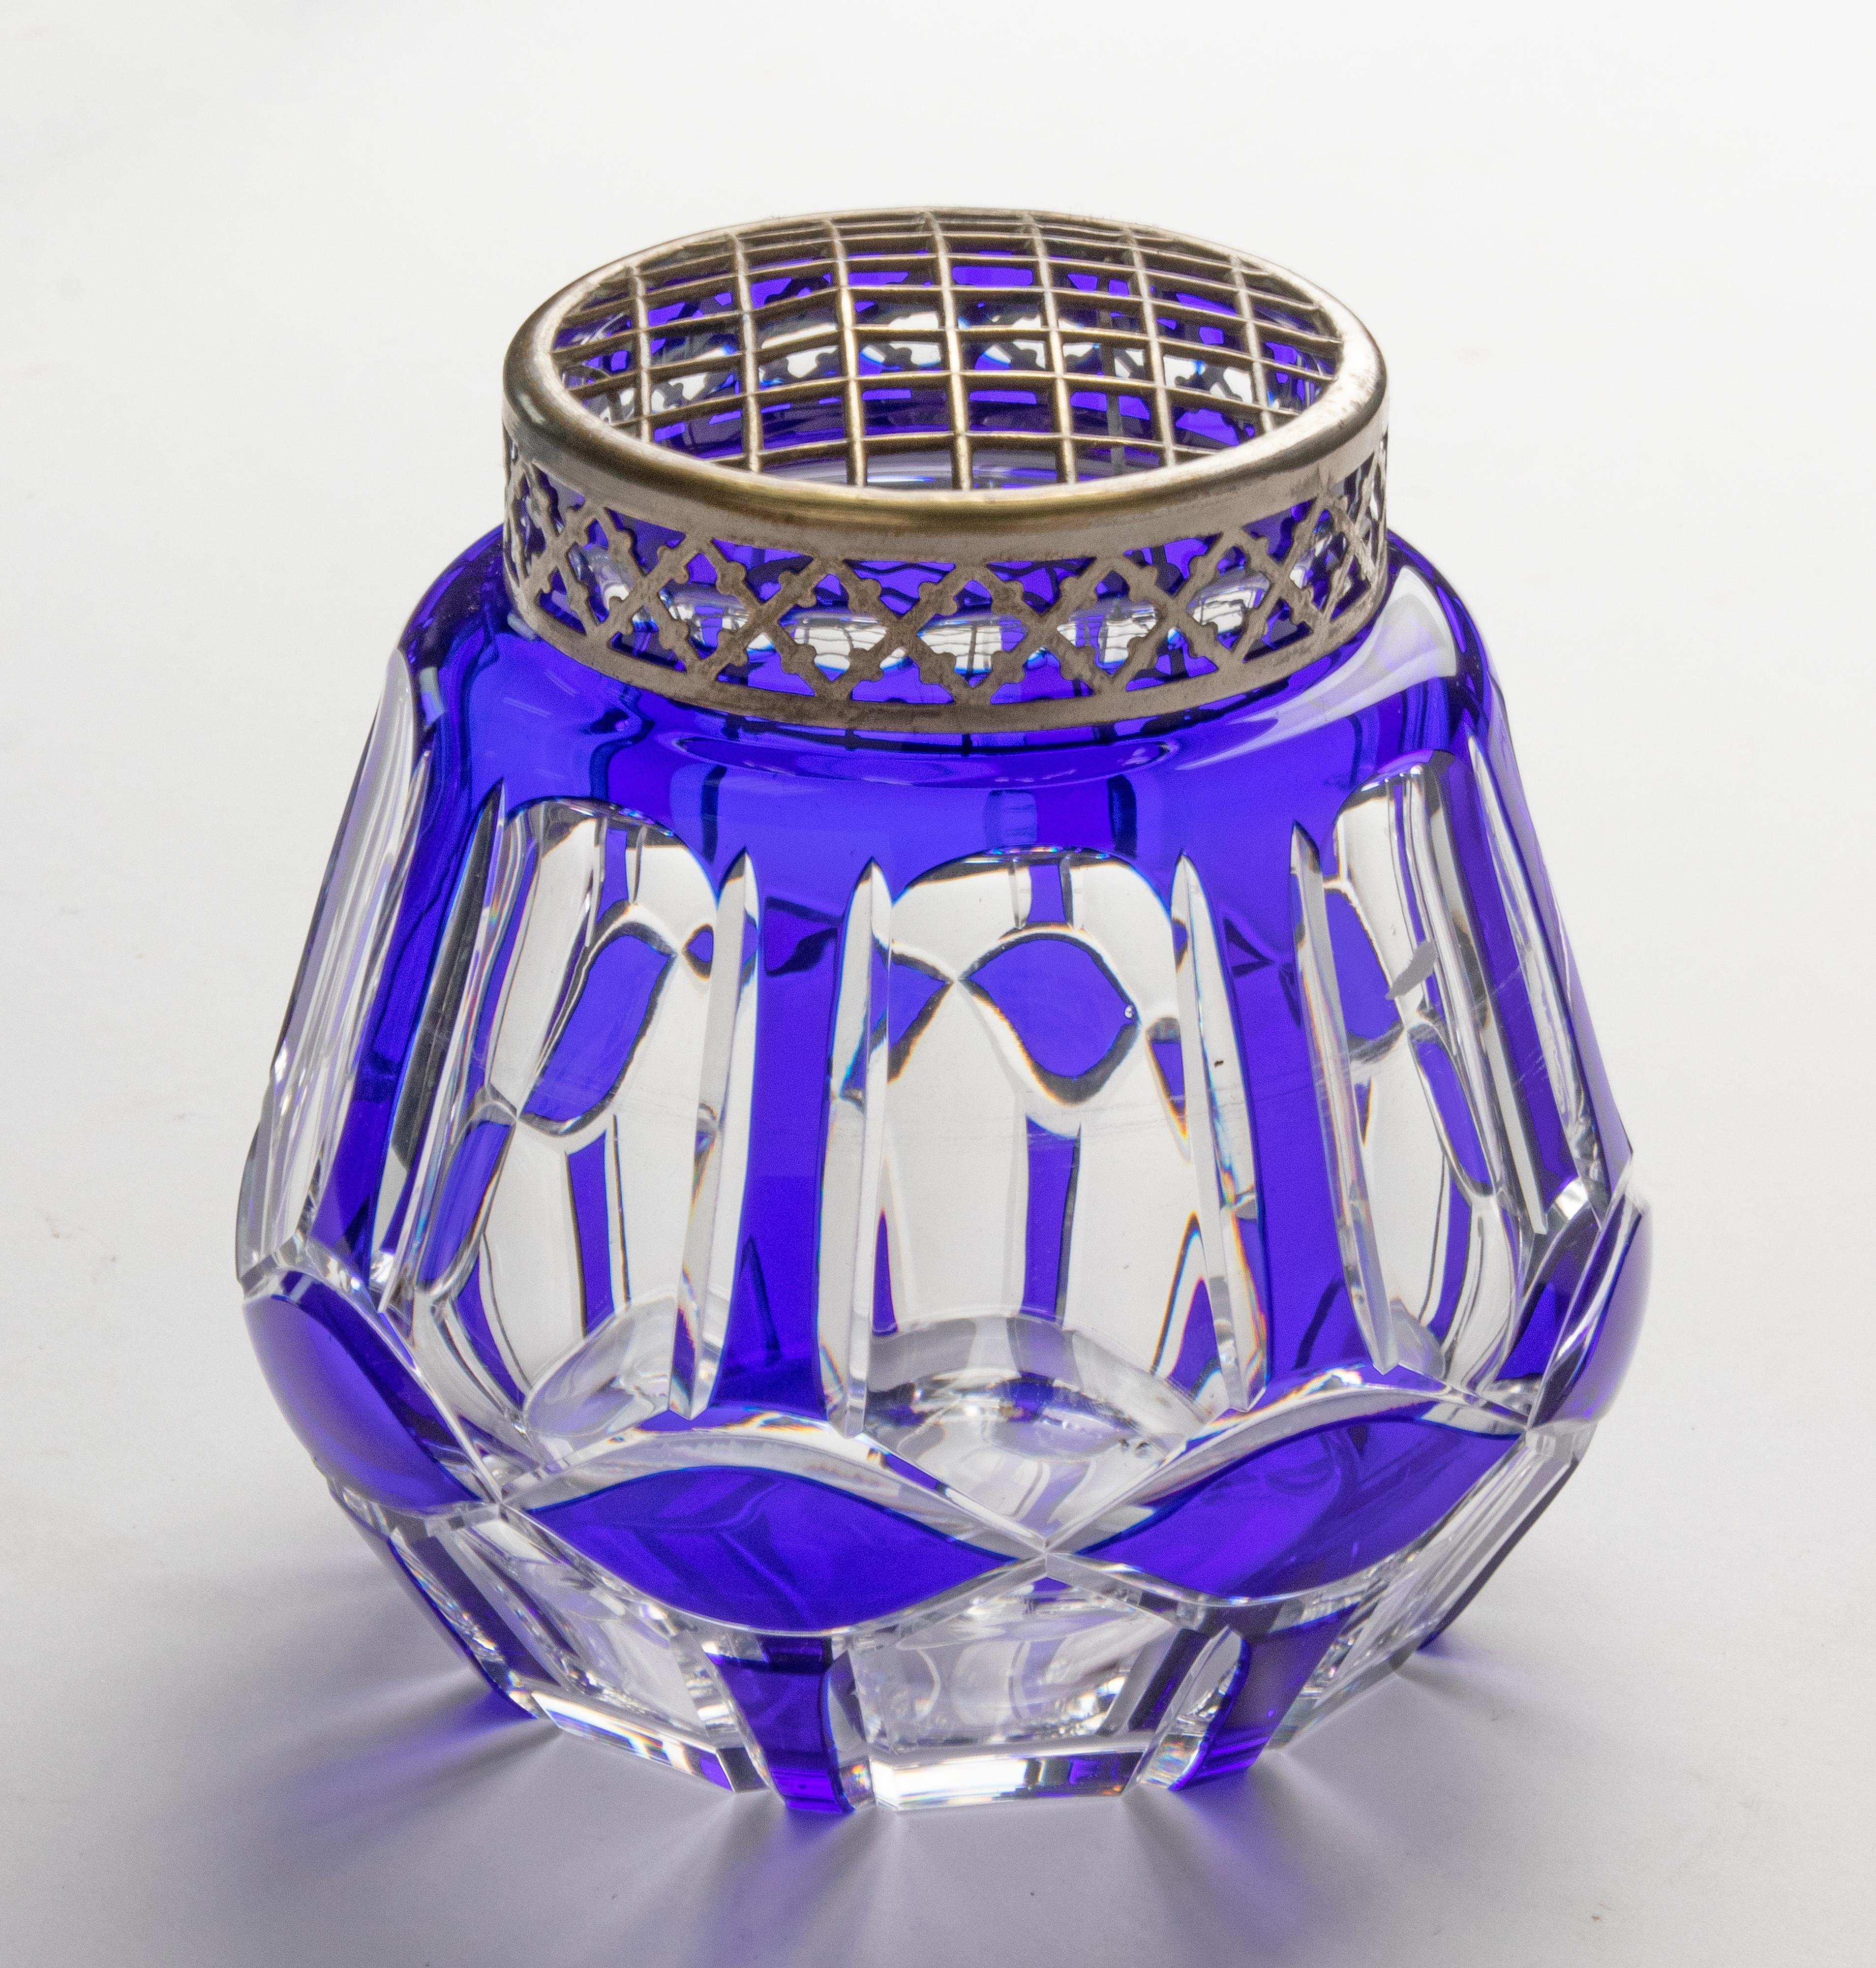 Grand vase Pick Fleur en cristal de la marque belge Val Saint Lambert. Le vase a une couleur bleu profond et sur le dessus une grille en métal, pour soutenir les tiges dans une composition. Le corps contient une bonne quantité d'eau pour que